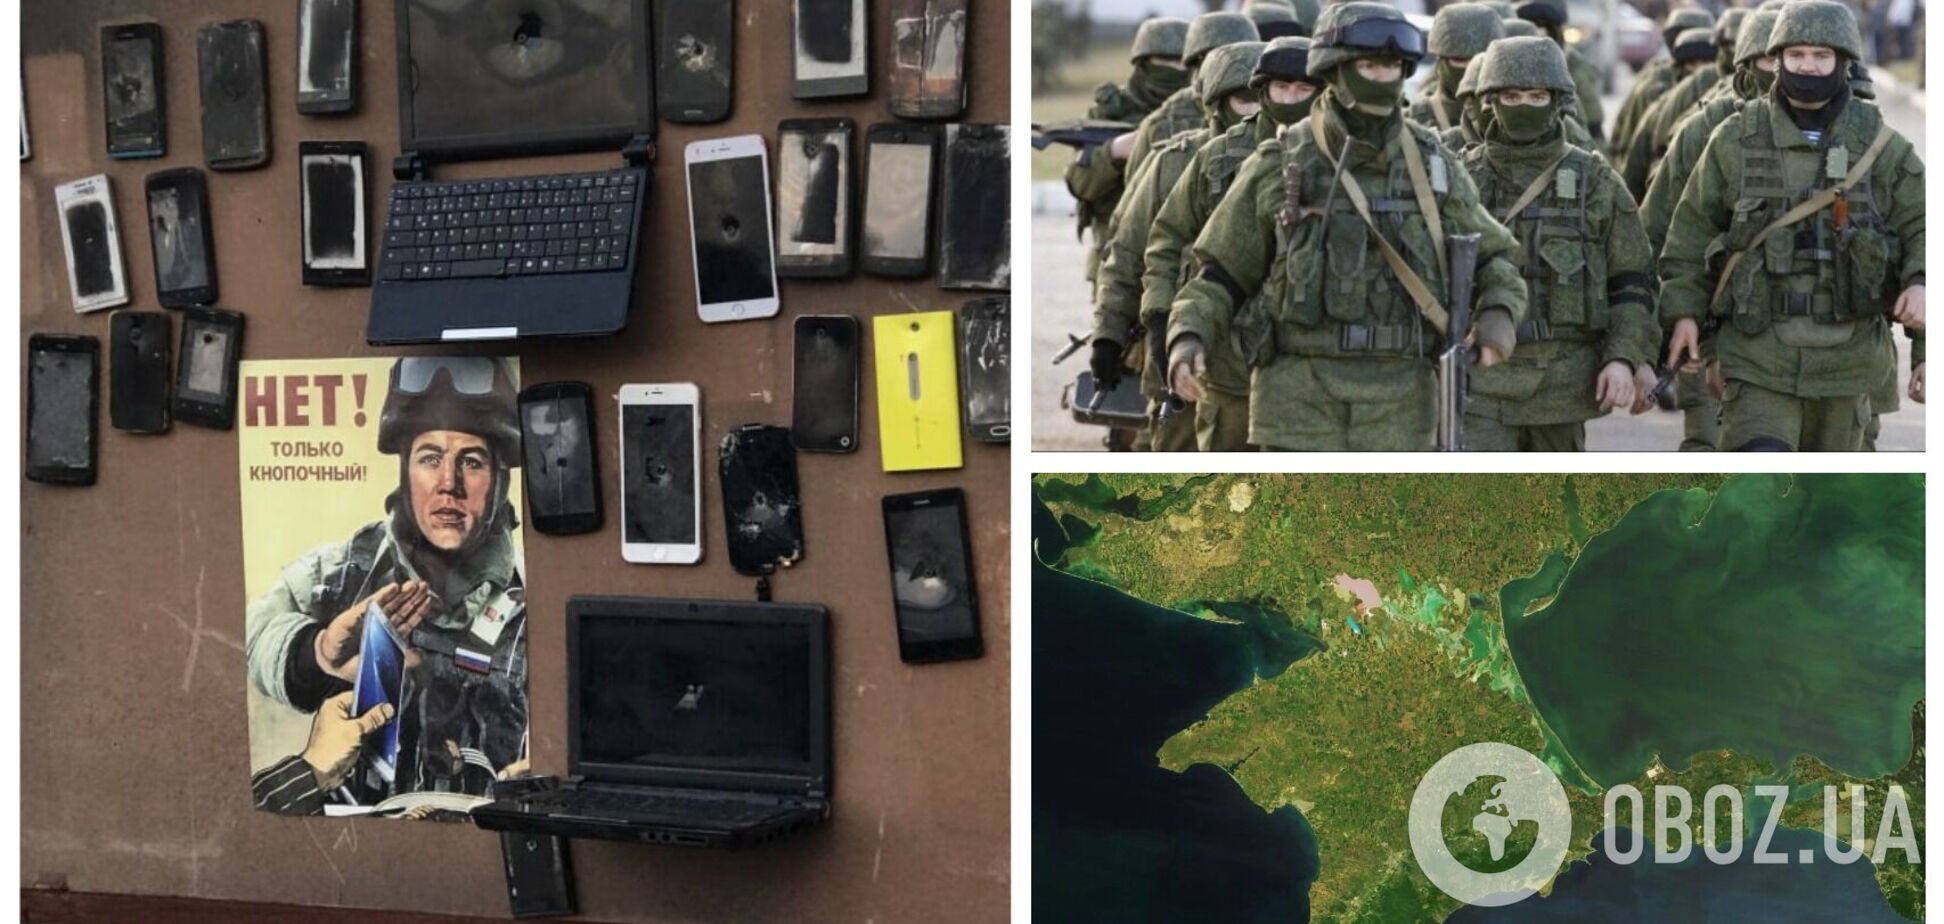 Оккупанты в Крыму сделали стенд-'аппликацию' со смартфонами, чтобы предупредить об угрозе от ВСУ, но оконфузились. Фото